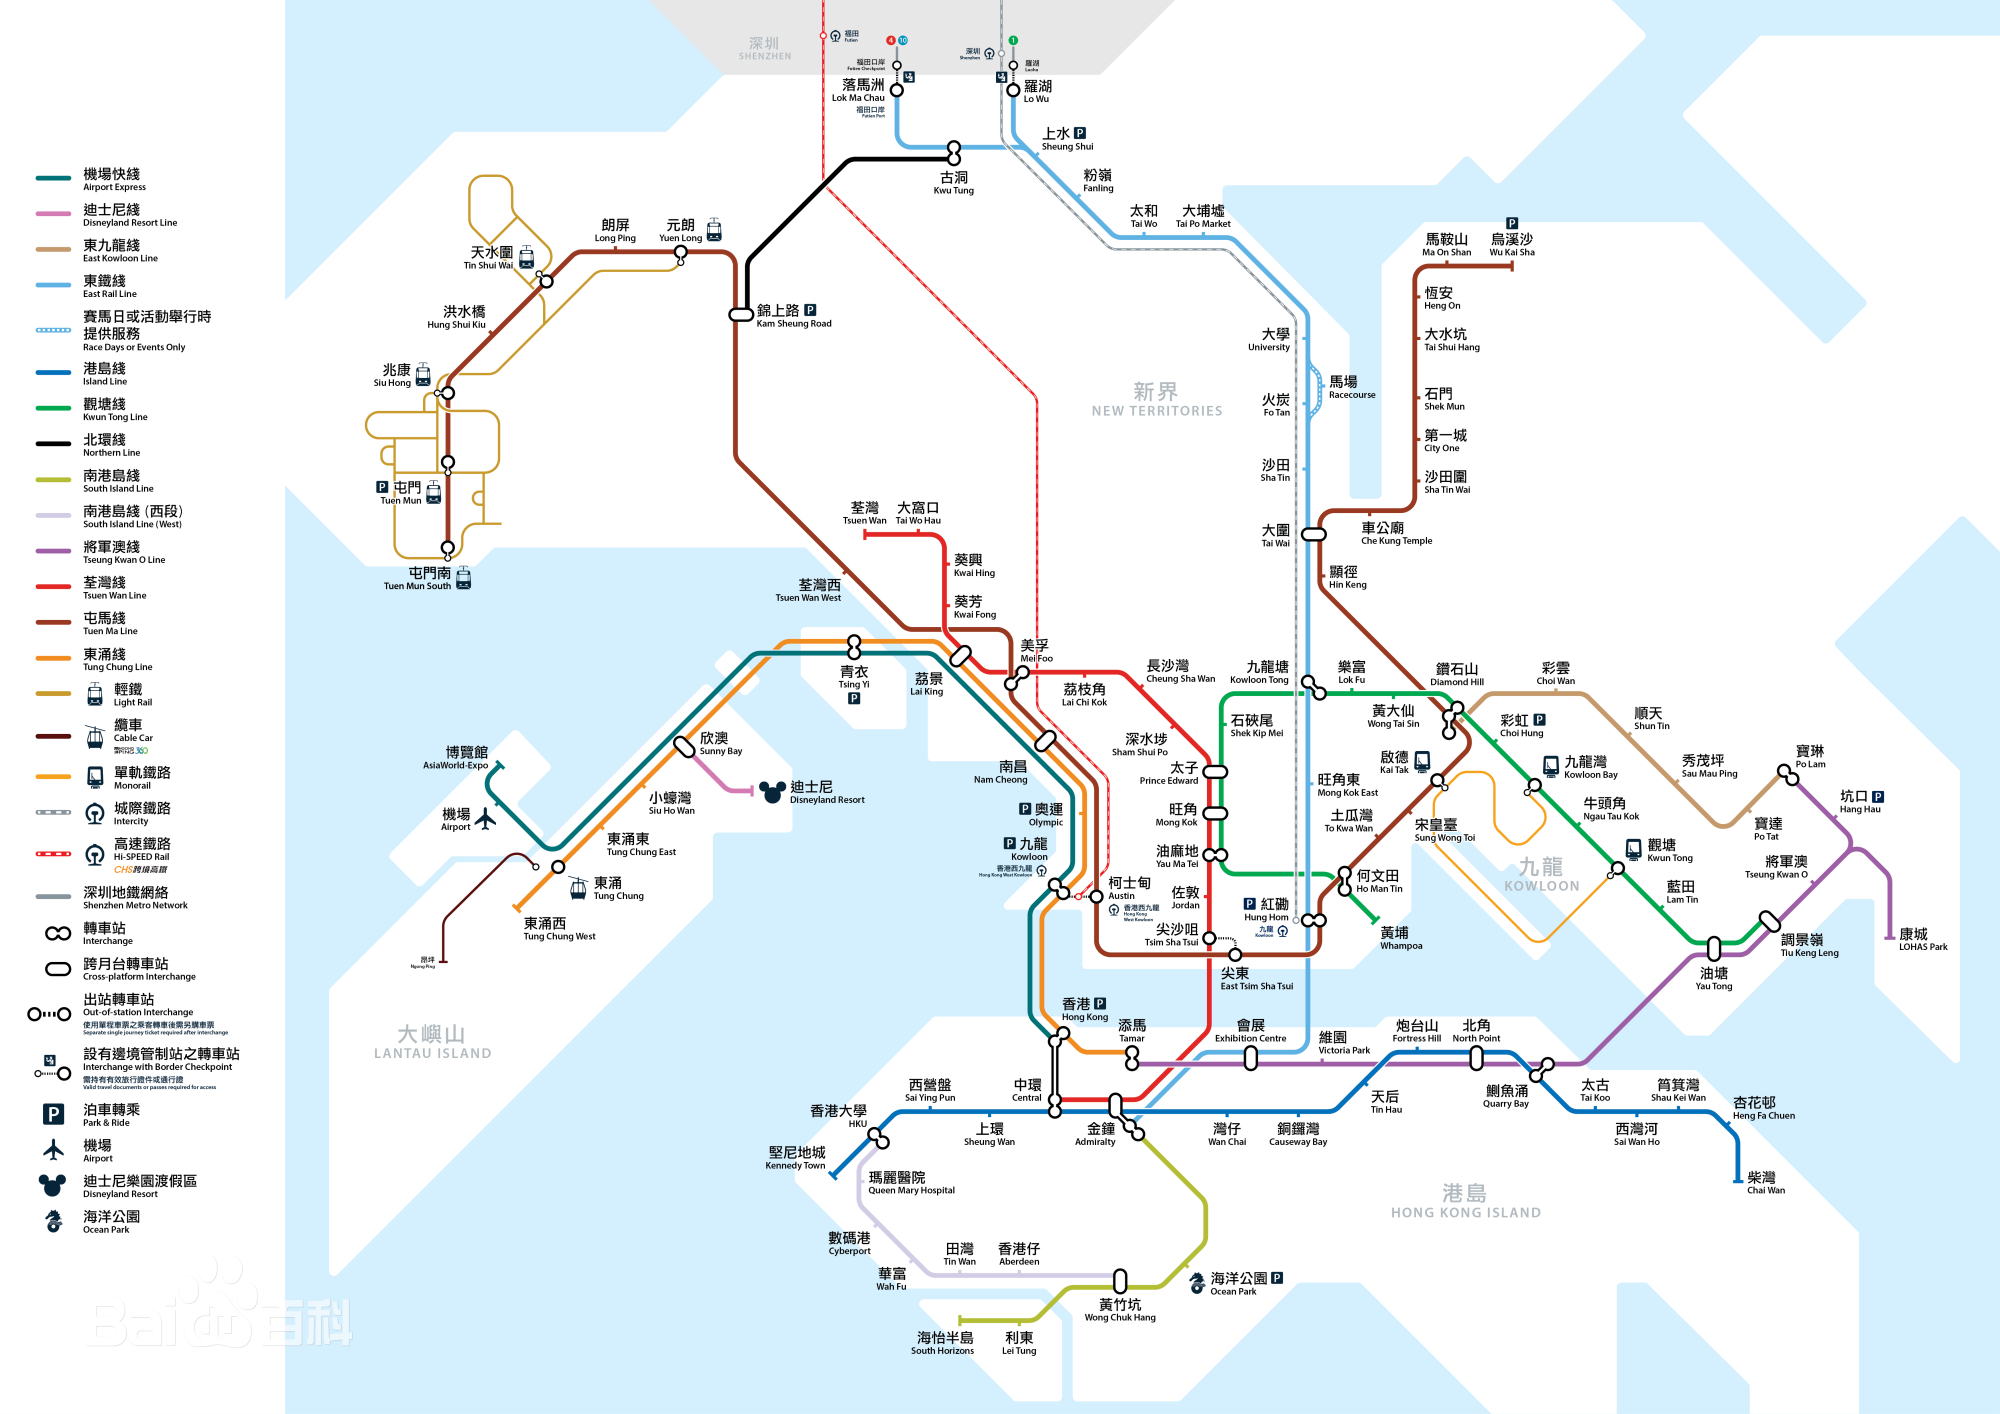 香港地铁运营里程达230公里,提供免费wifi和母婴室